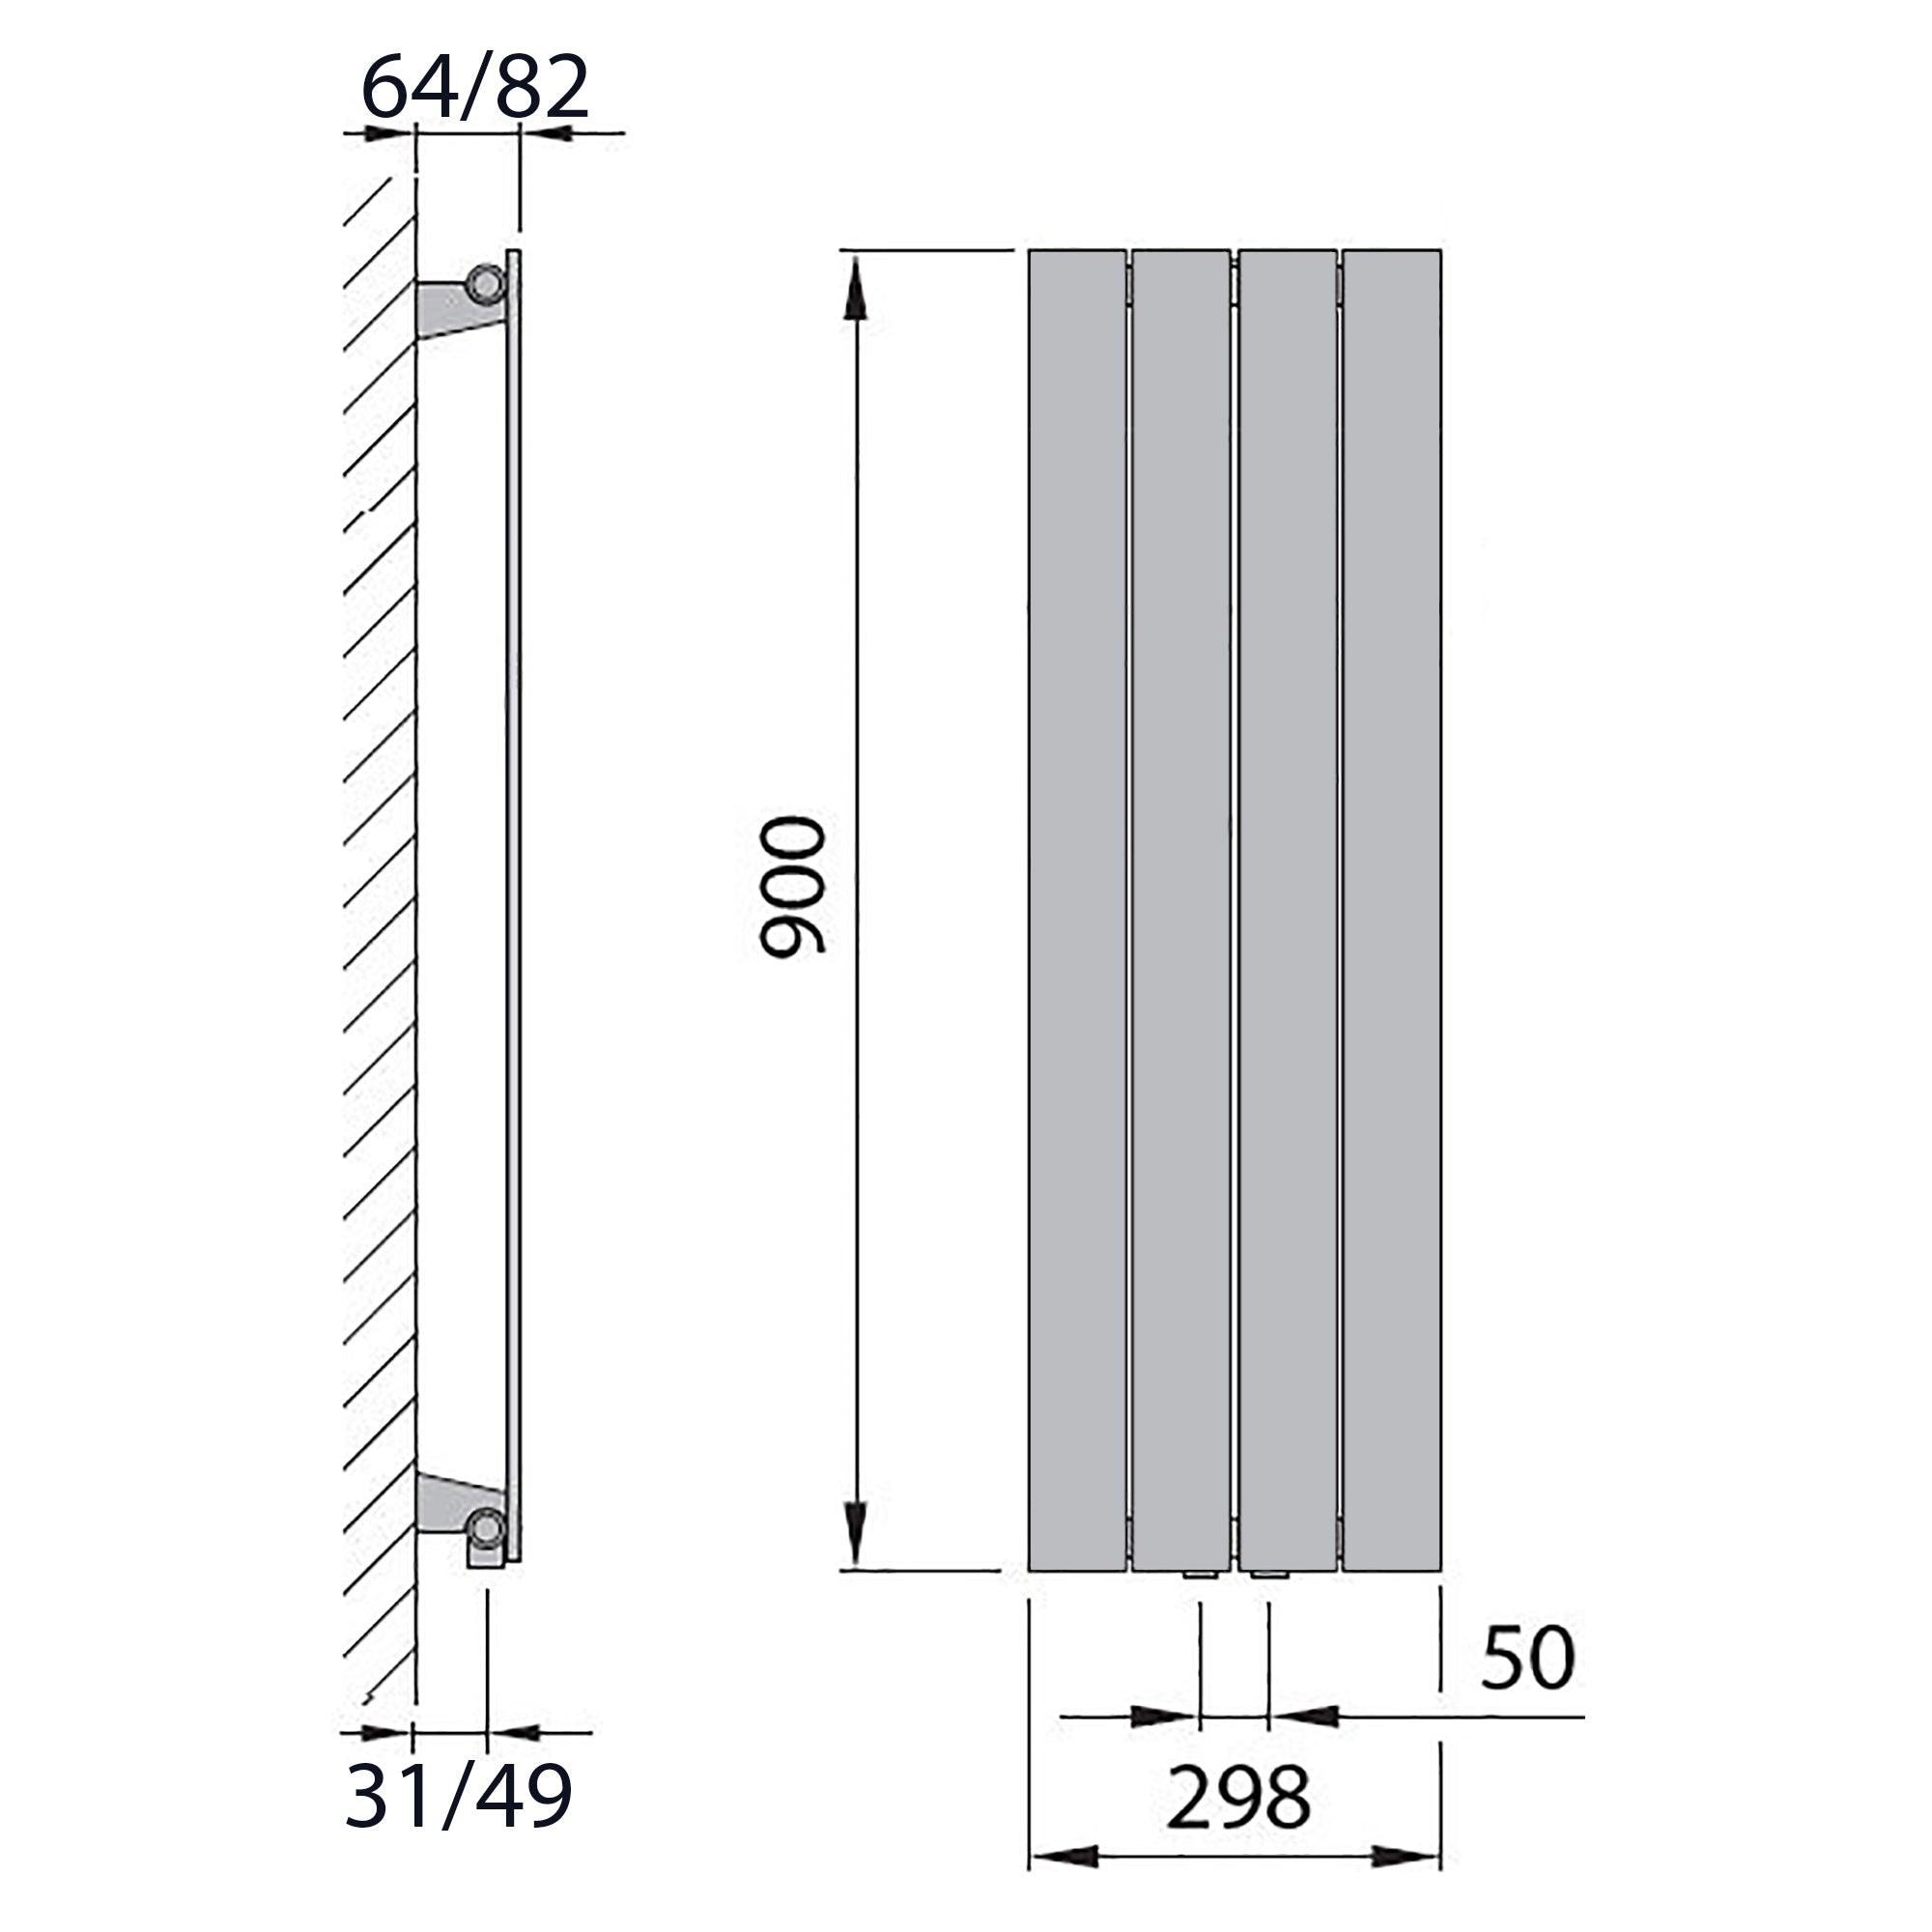 Design Paneelheizkörper vertikal 900 x 298 anthrazit Heizkörper Badheizkörper flach Badezimmer Heizung technische Zeichnung - heizkoerper.shop